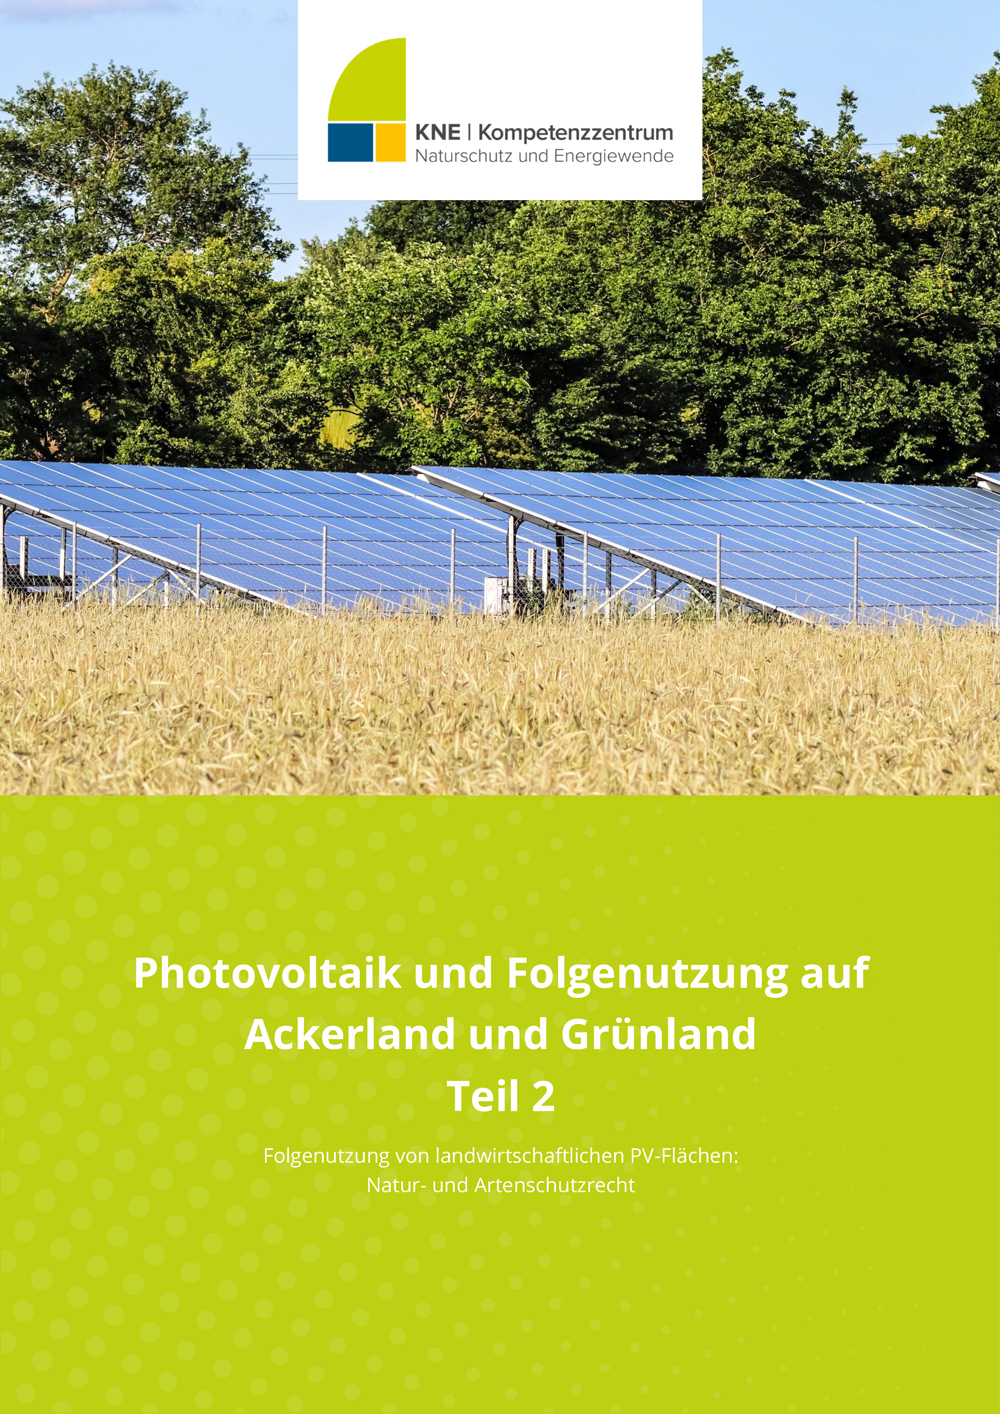 Titel-KNE_Photovoltaik_und_Folgenutzung_auf_Ackerland_und_Gruenland_Teil-2